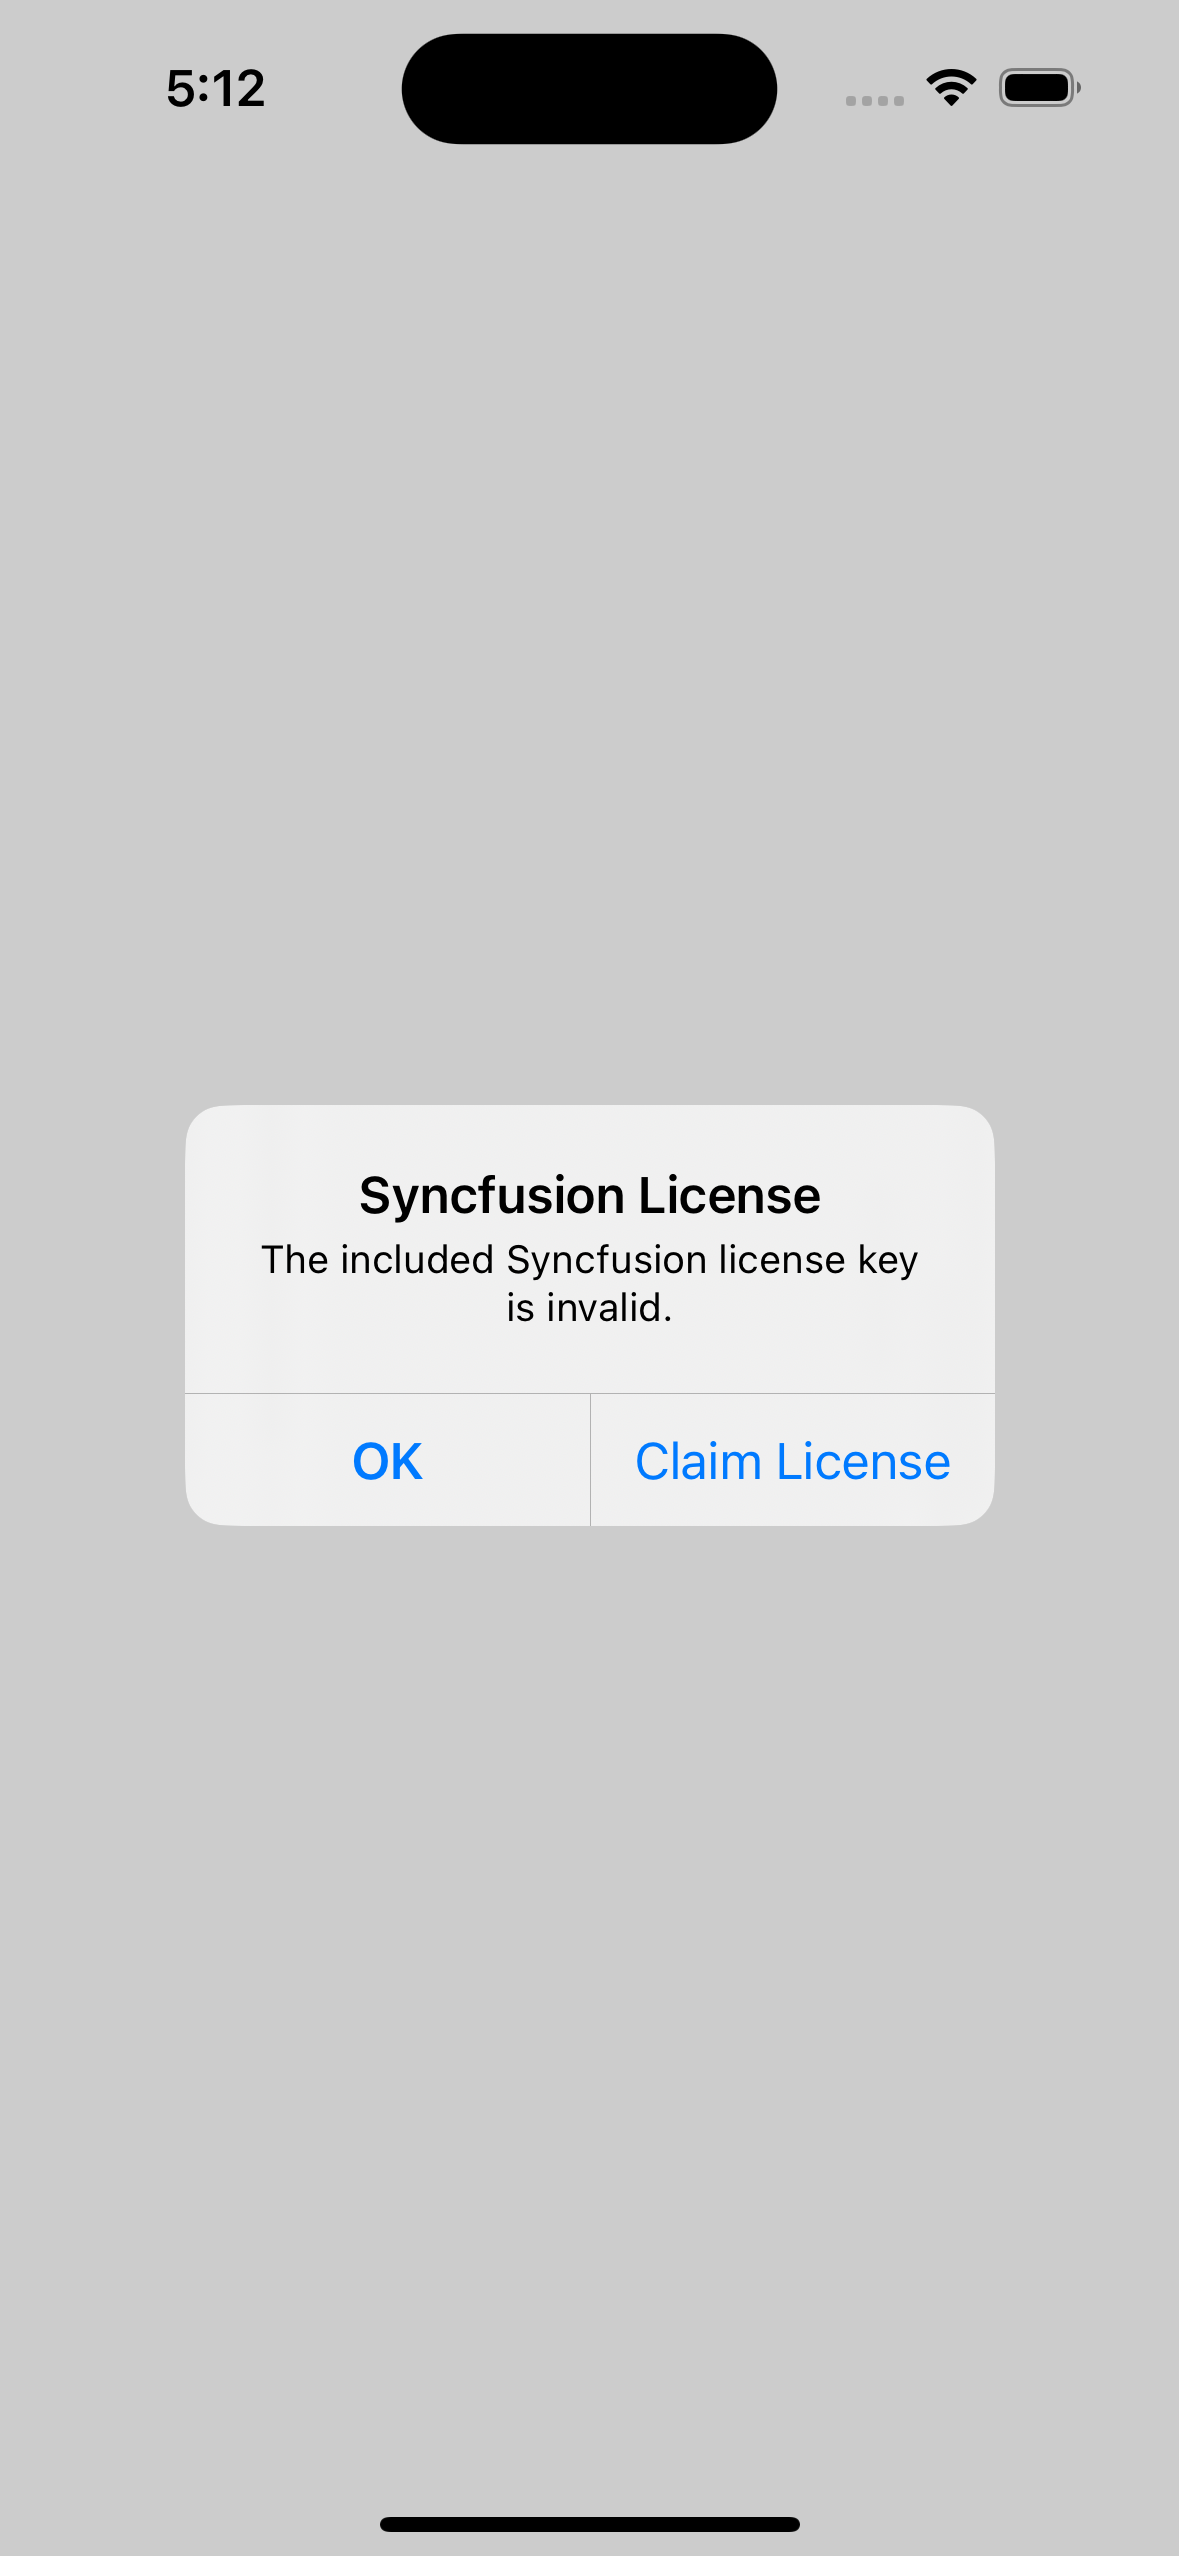 License key not registered